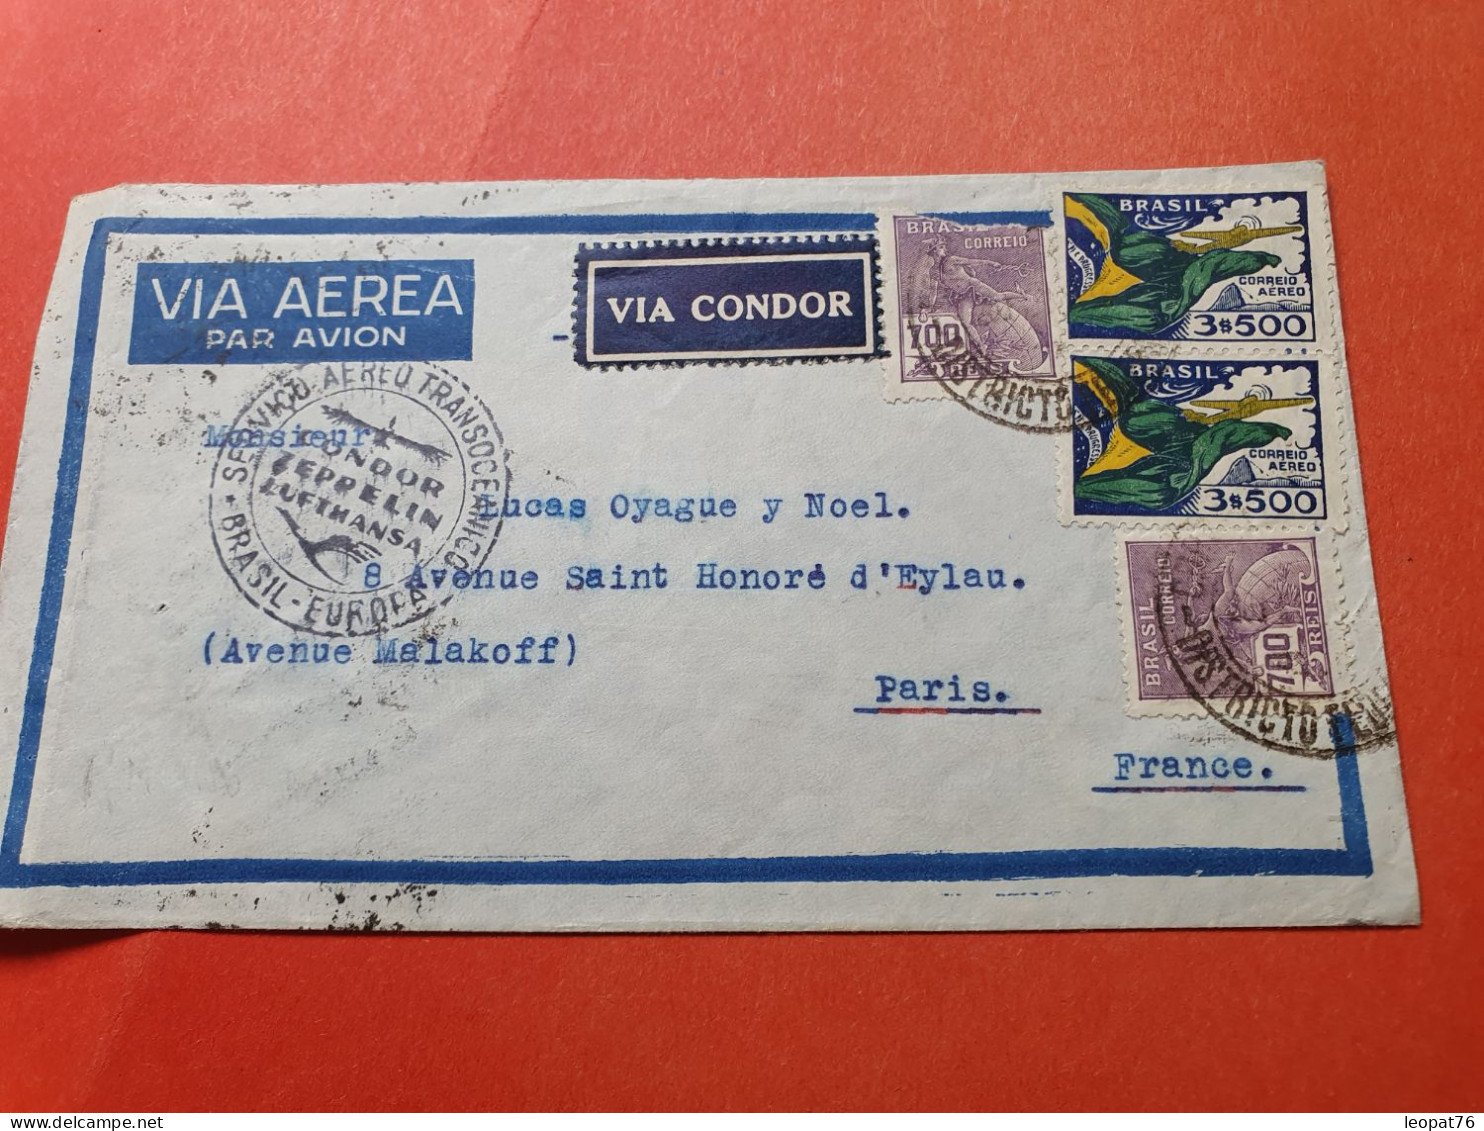 Brésil - Enveloppe Pour La France Par Avion Par Cie Lufthansa En 1935  - Réf 3373 - Covers & Documents